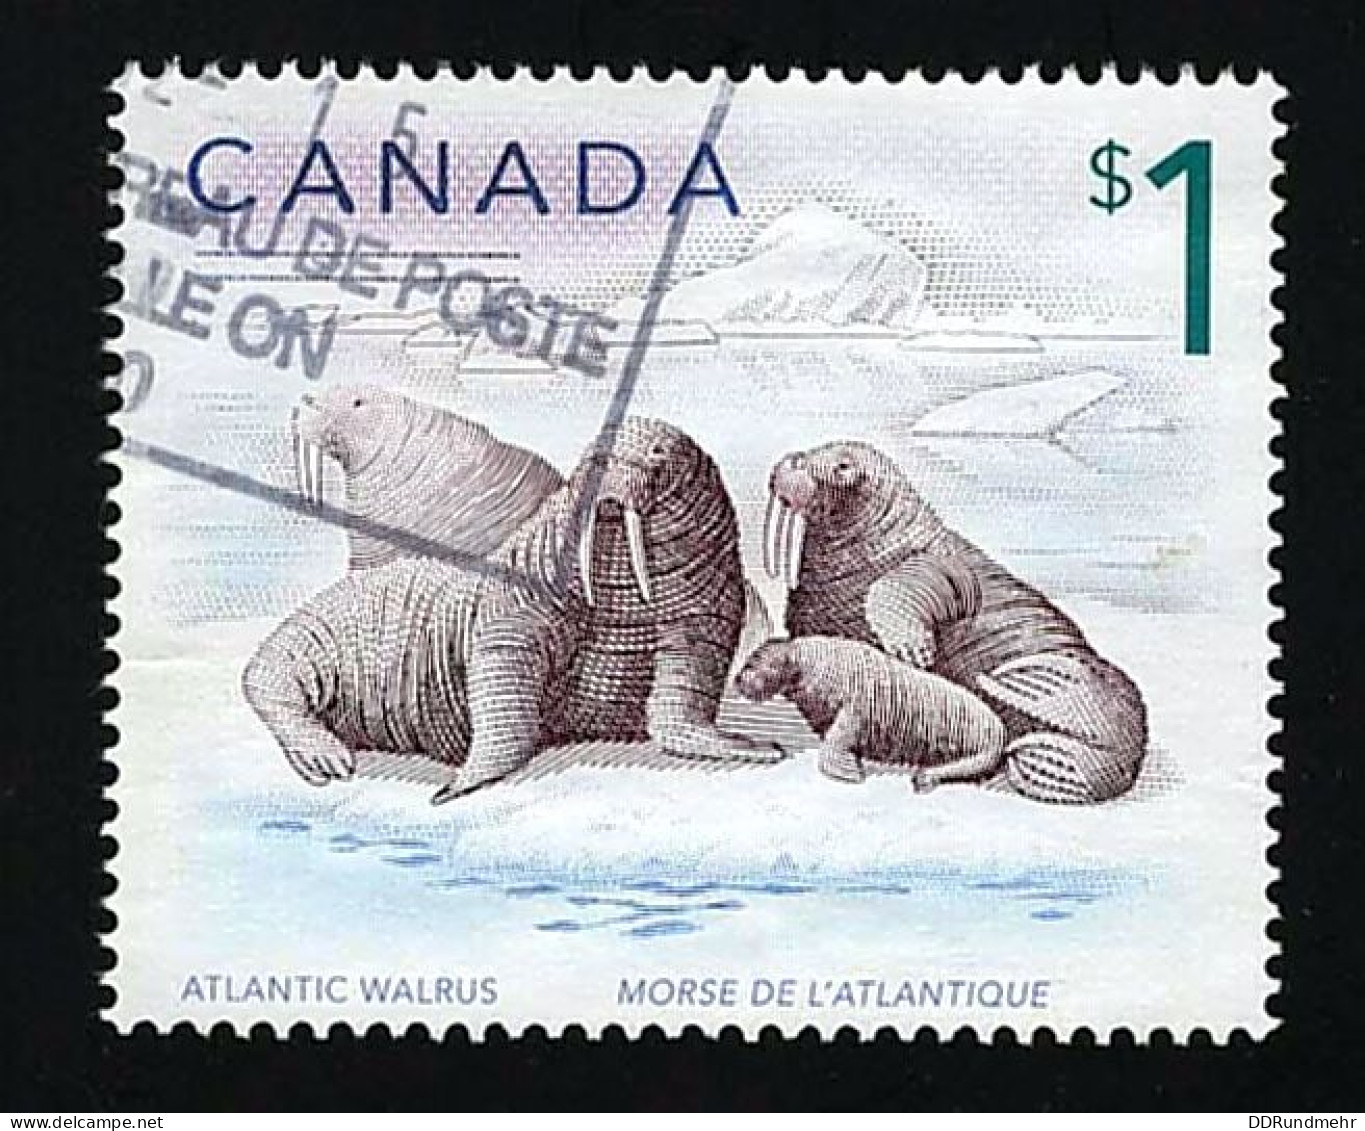 2005 Atlantic Walrus Michel CA 2300 Stamp Number CA 1689 Yvert Et Tellier CA 2183 Stanley Gibbons CA 1758 Used - Gebraucht